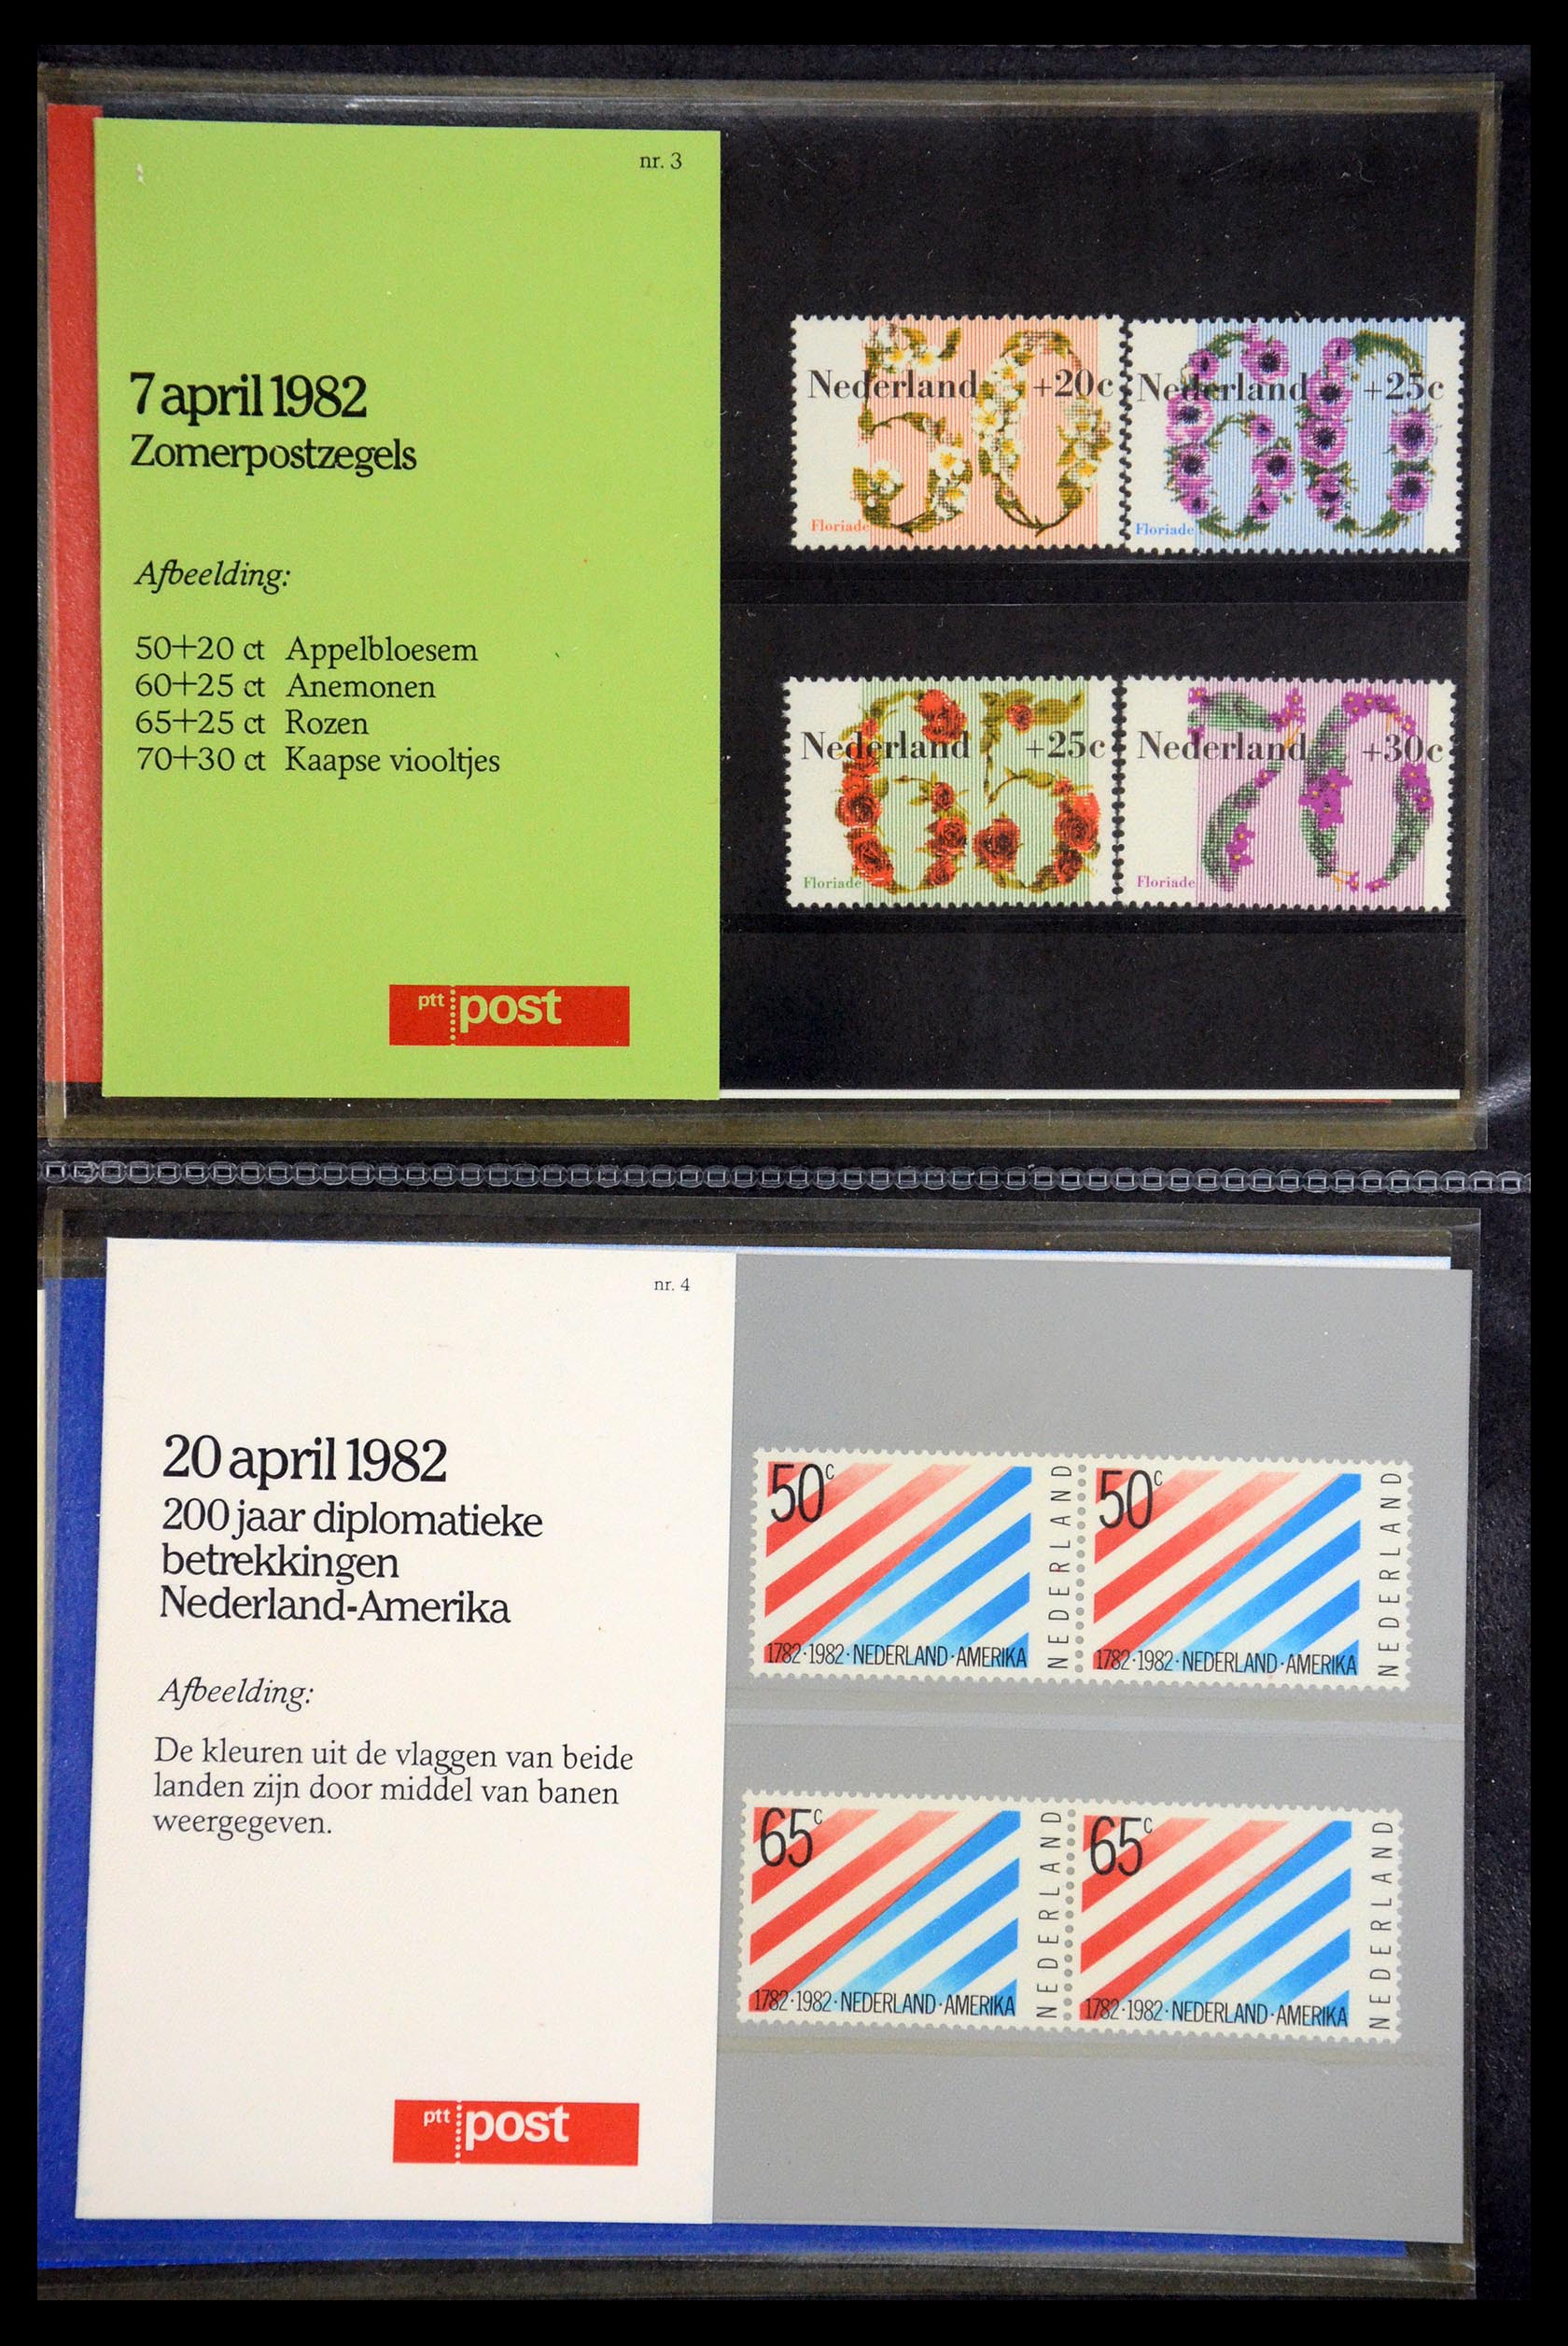 35187 002 - Stamp Collection 35187 Netherlands PTT presentation packs 1982-2019!